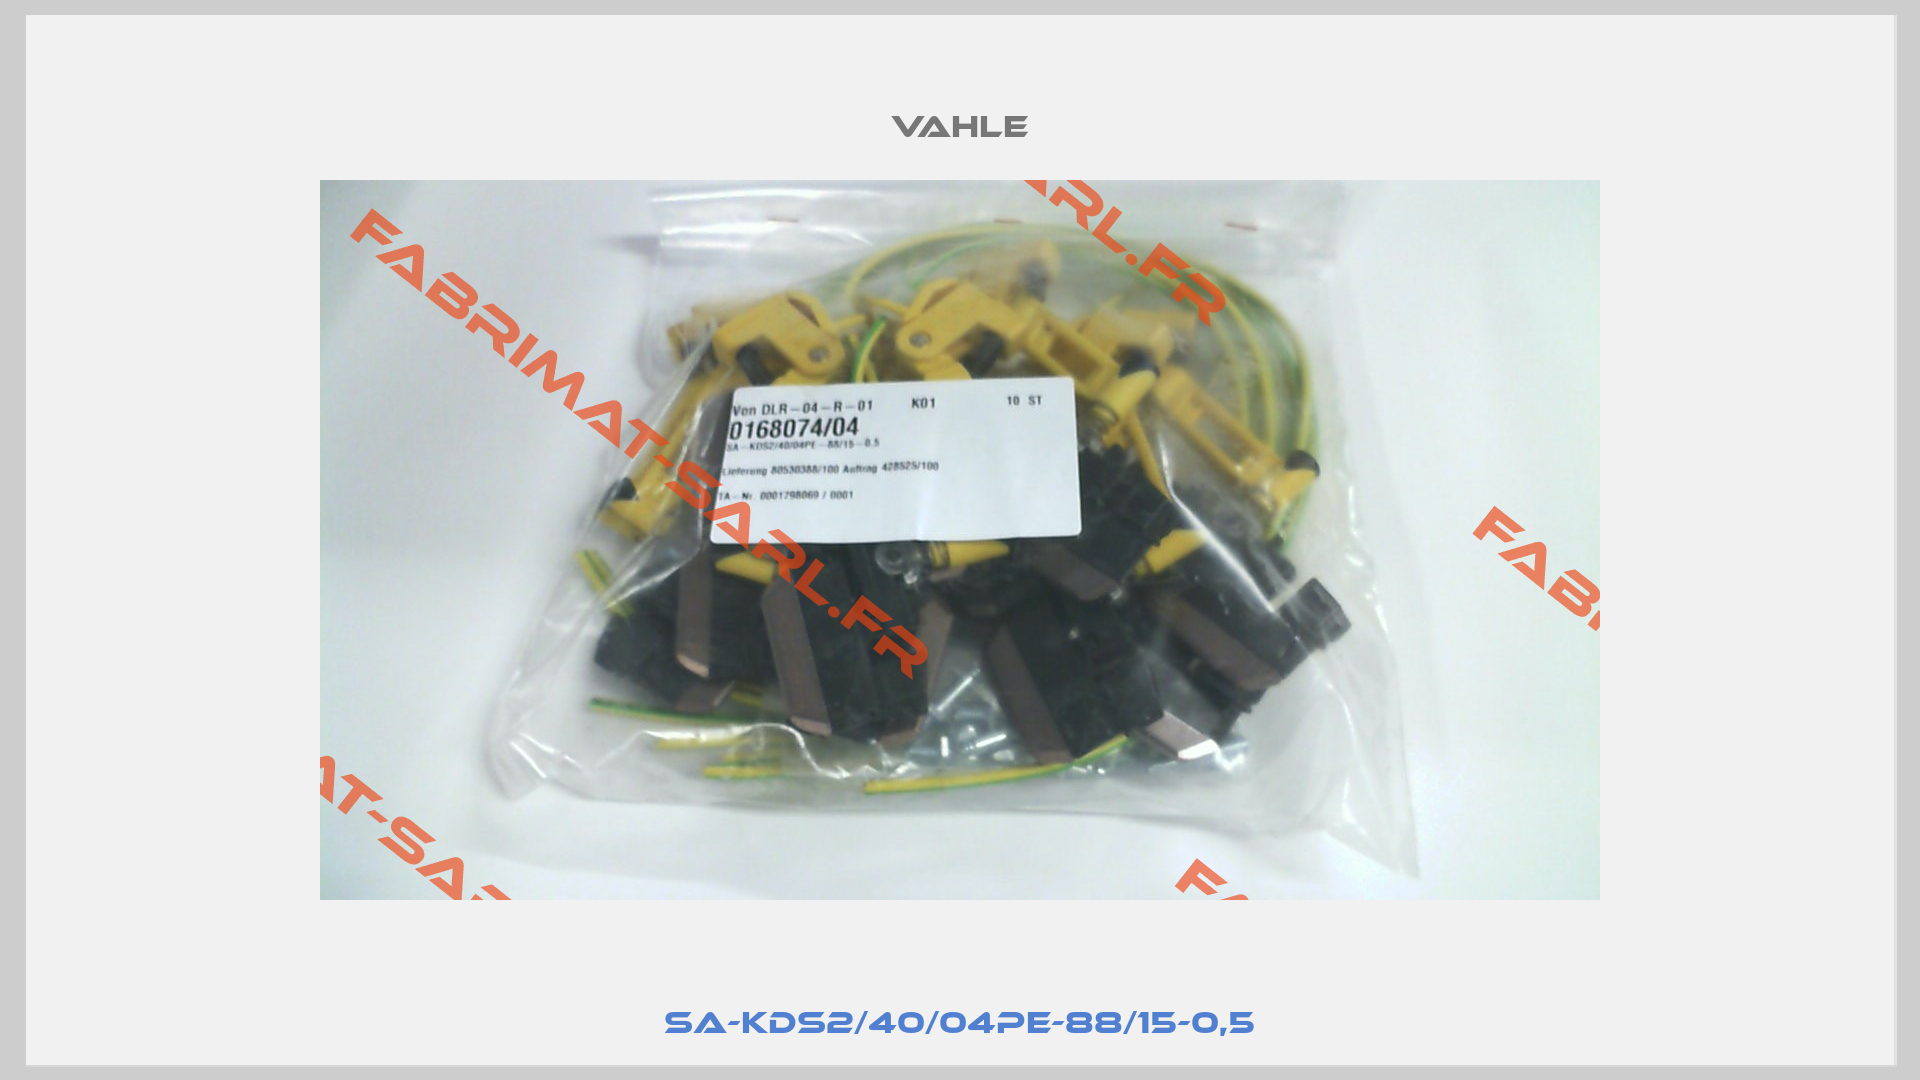 SA-KDS2/40/04PE-88/15-0,5-2